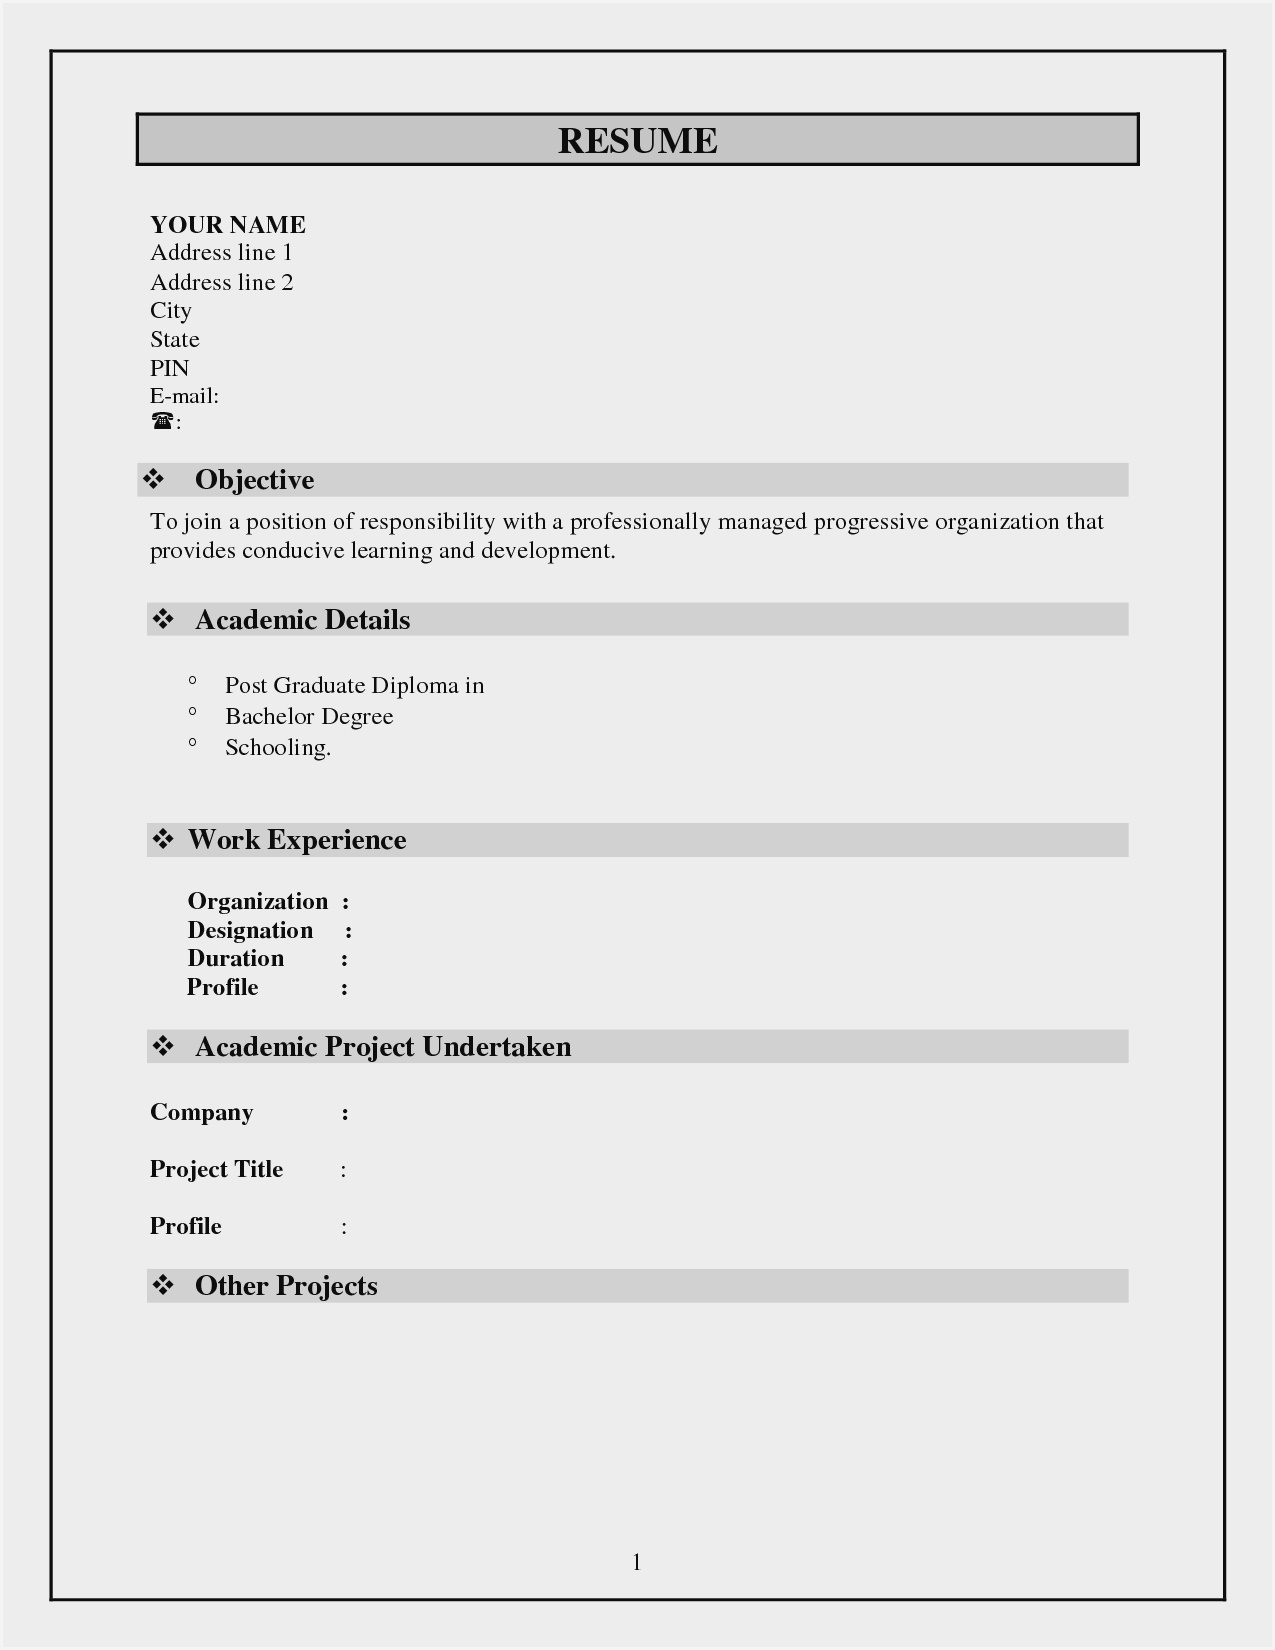 Blank Resume Format Pdf Free Download – Resume : Resume Inside Free Blank Cv Template Download